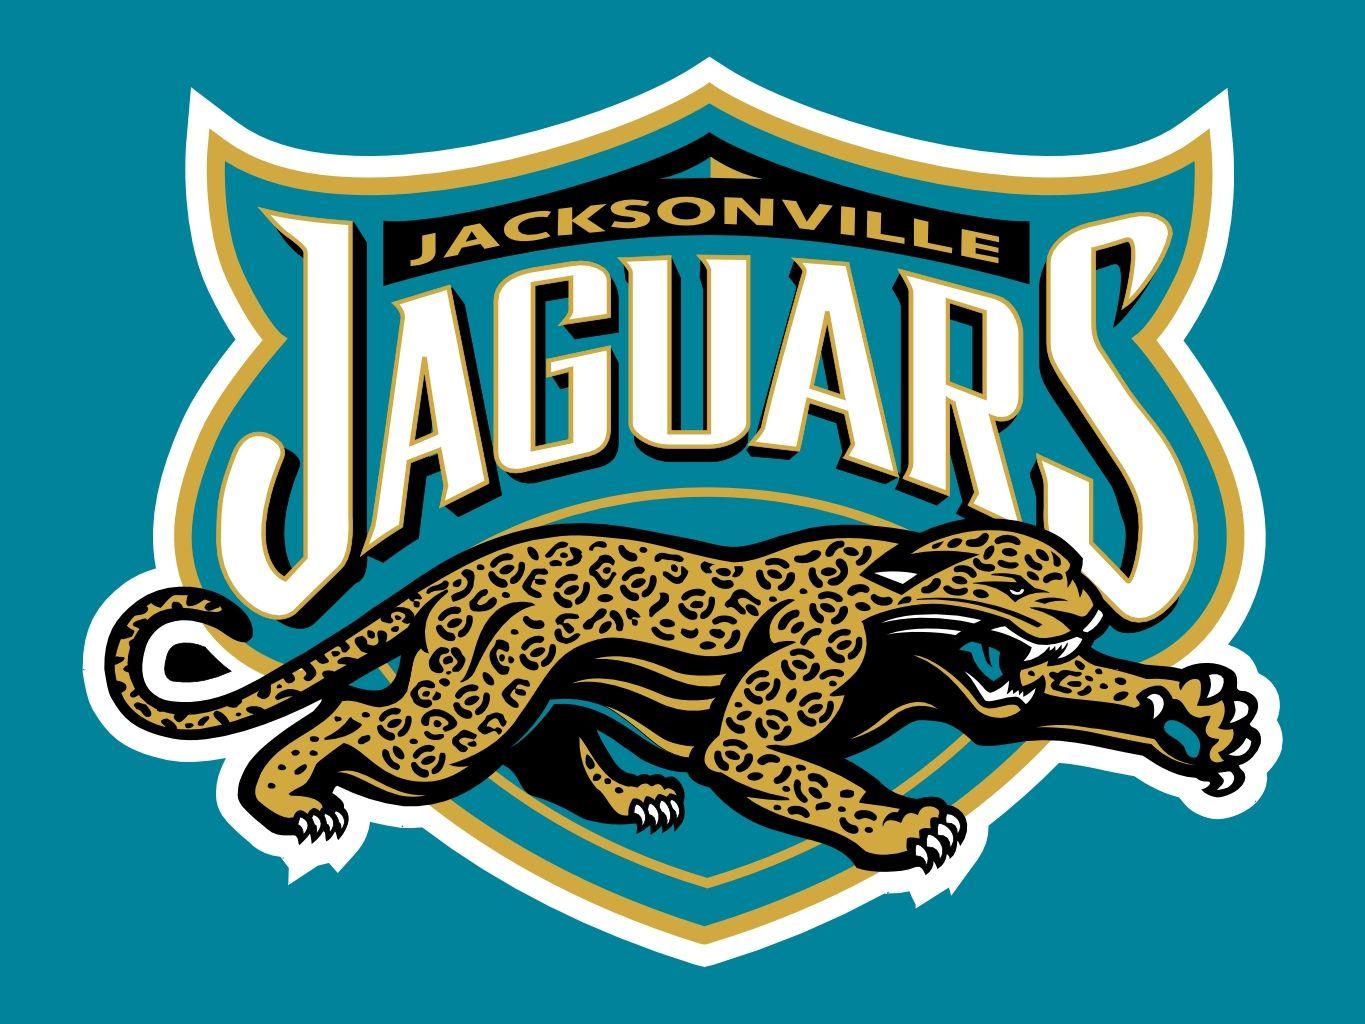 Jacksonville Jaguars Logo - jacksonville jaguars logos Image Search Results. NFL / NBA